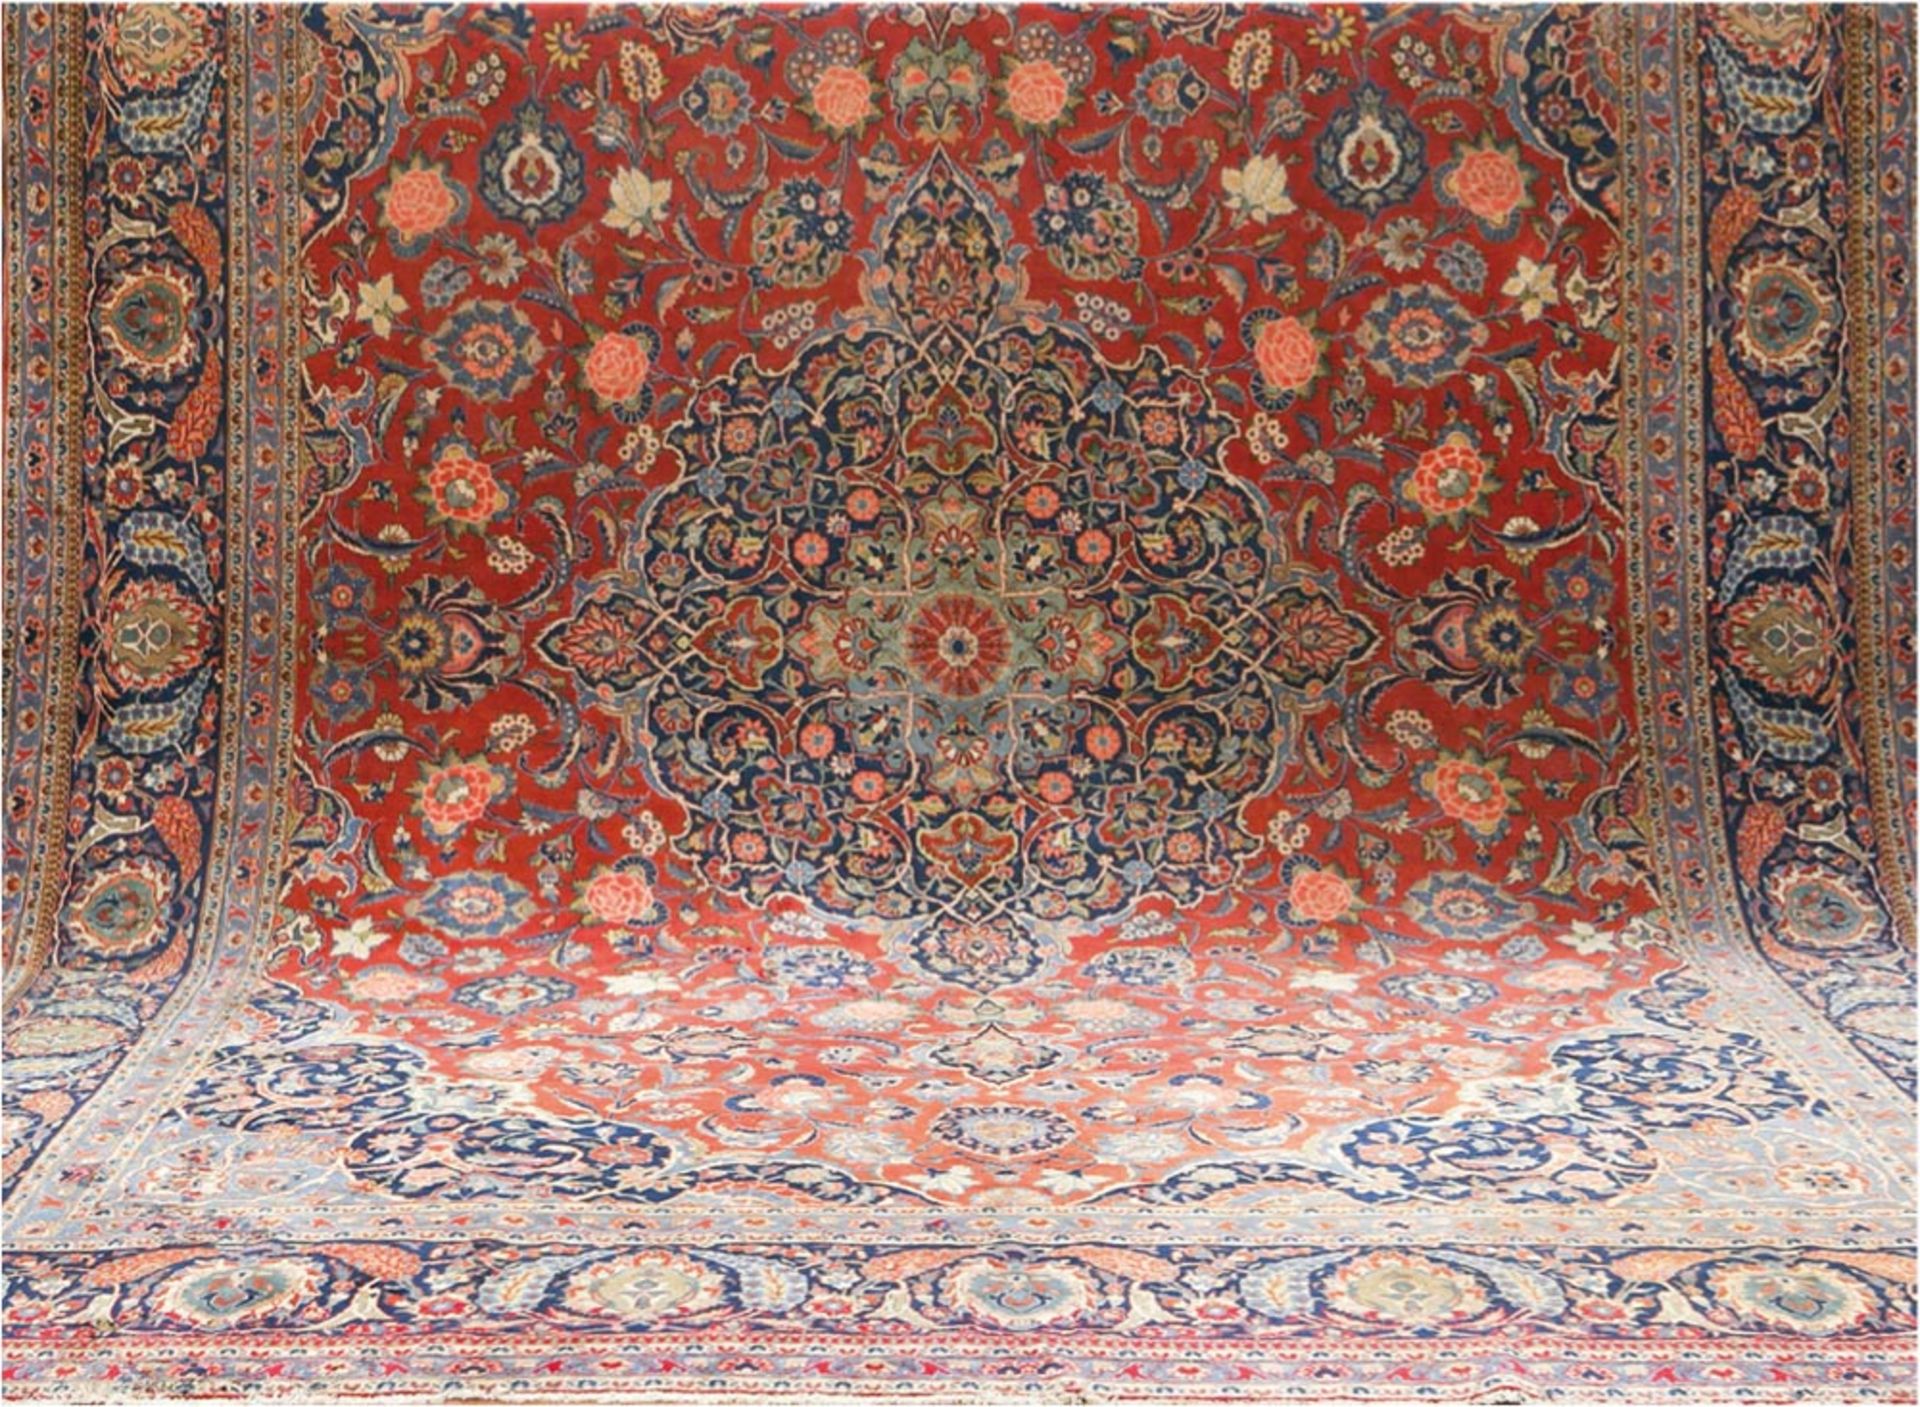 Teppich, Keshan, um 1900, rotgrundig mit Zentral-Medaillion u. Floralmotiv, Kanten stellenweise lei